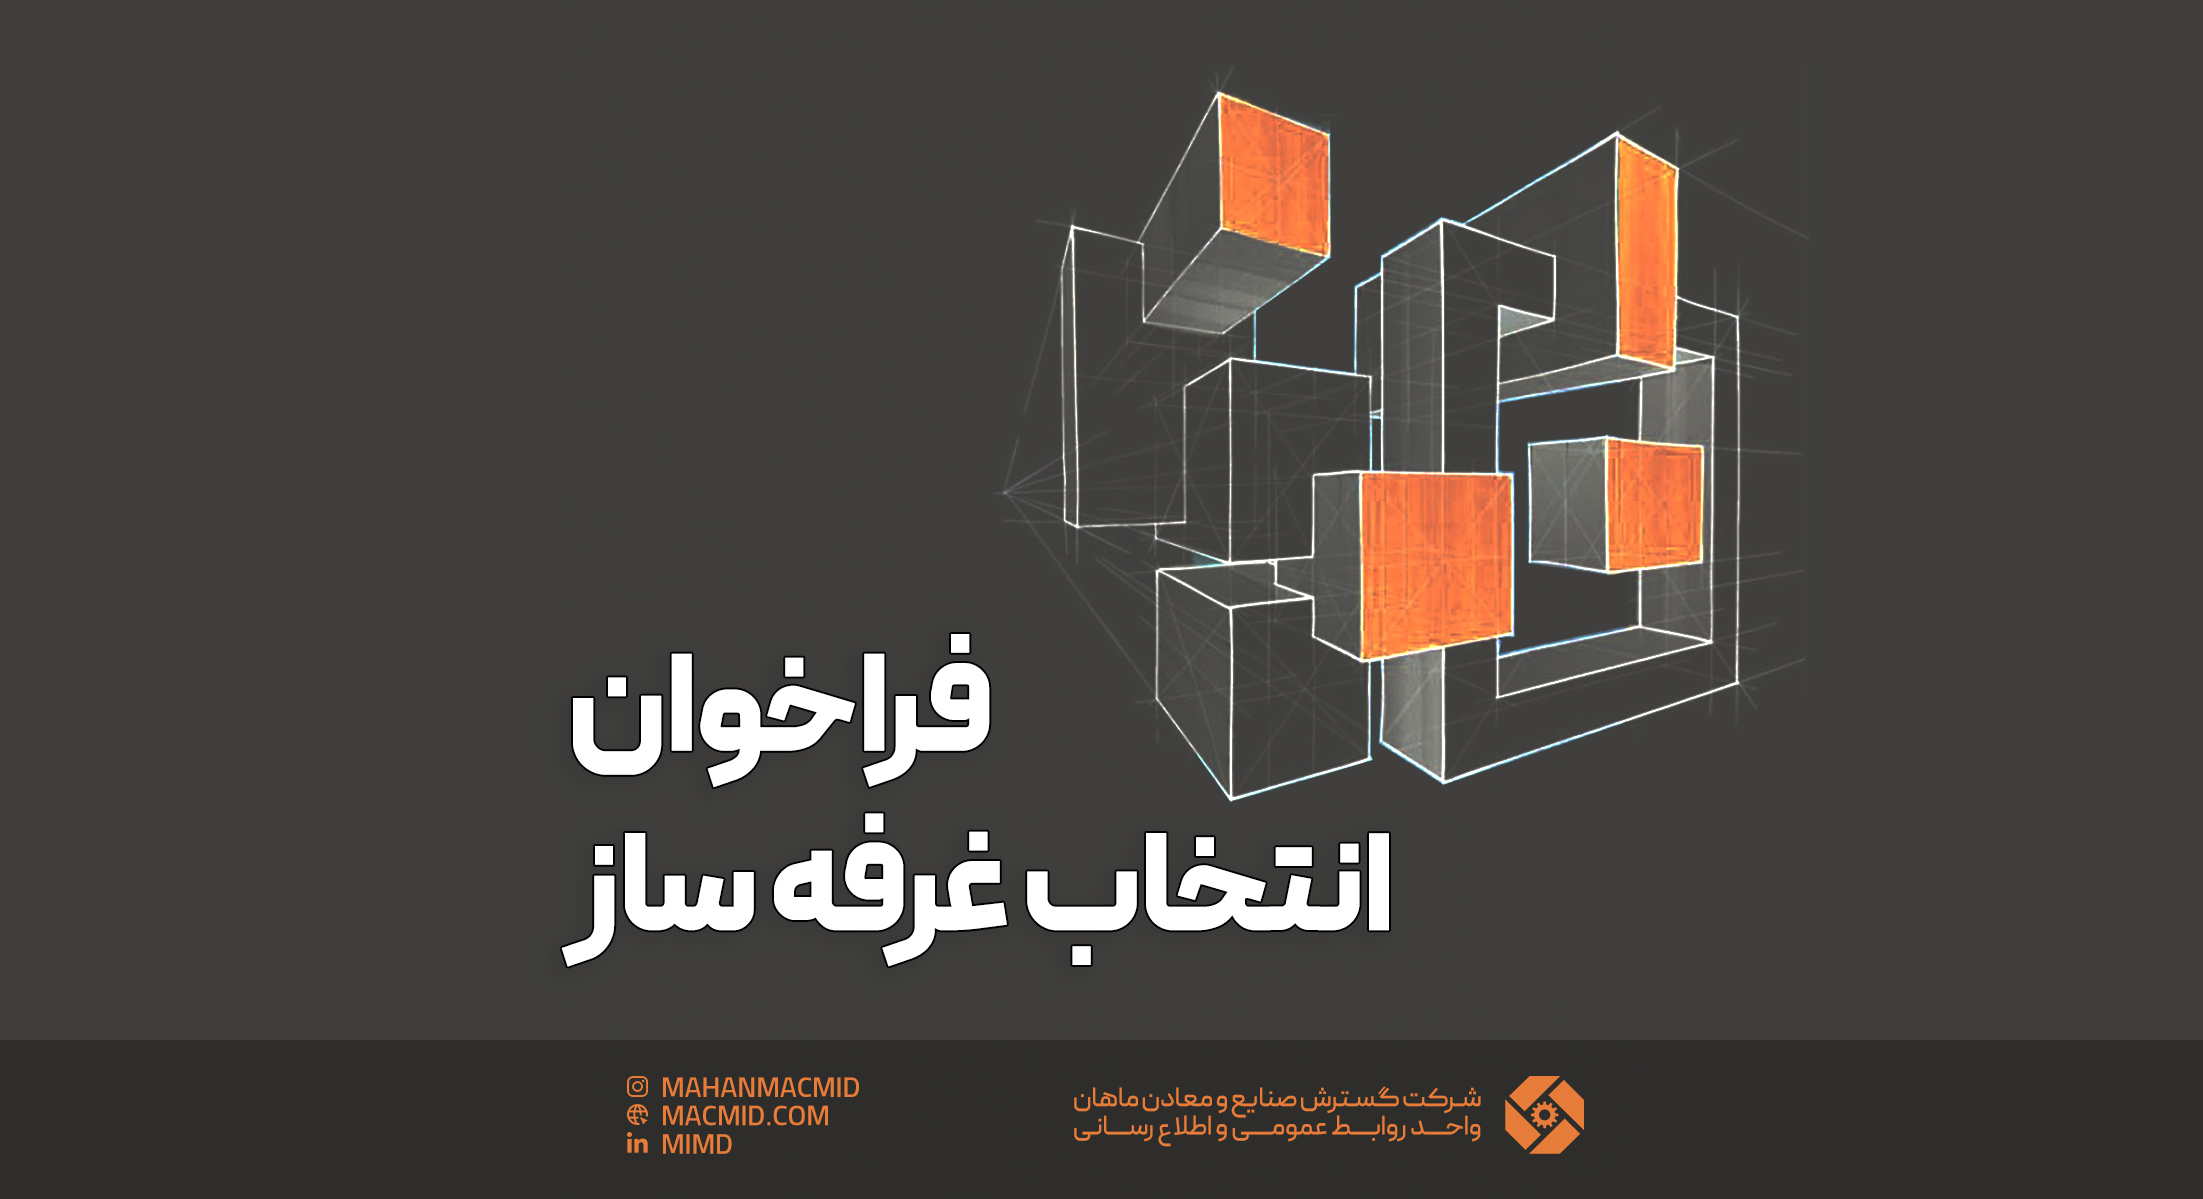 فراخوان انتخاب غرفه ساز (بیستمین نمایشگاه بین المللی متالوژی ایران متافو)